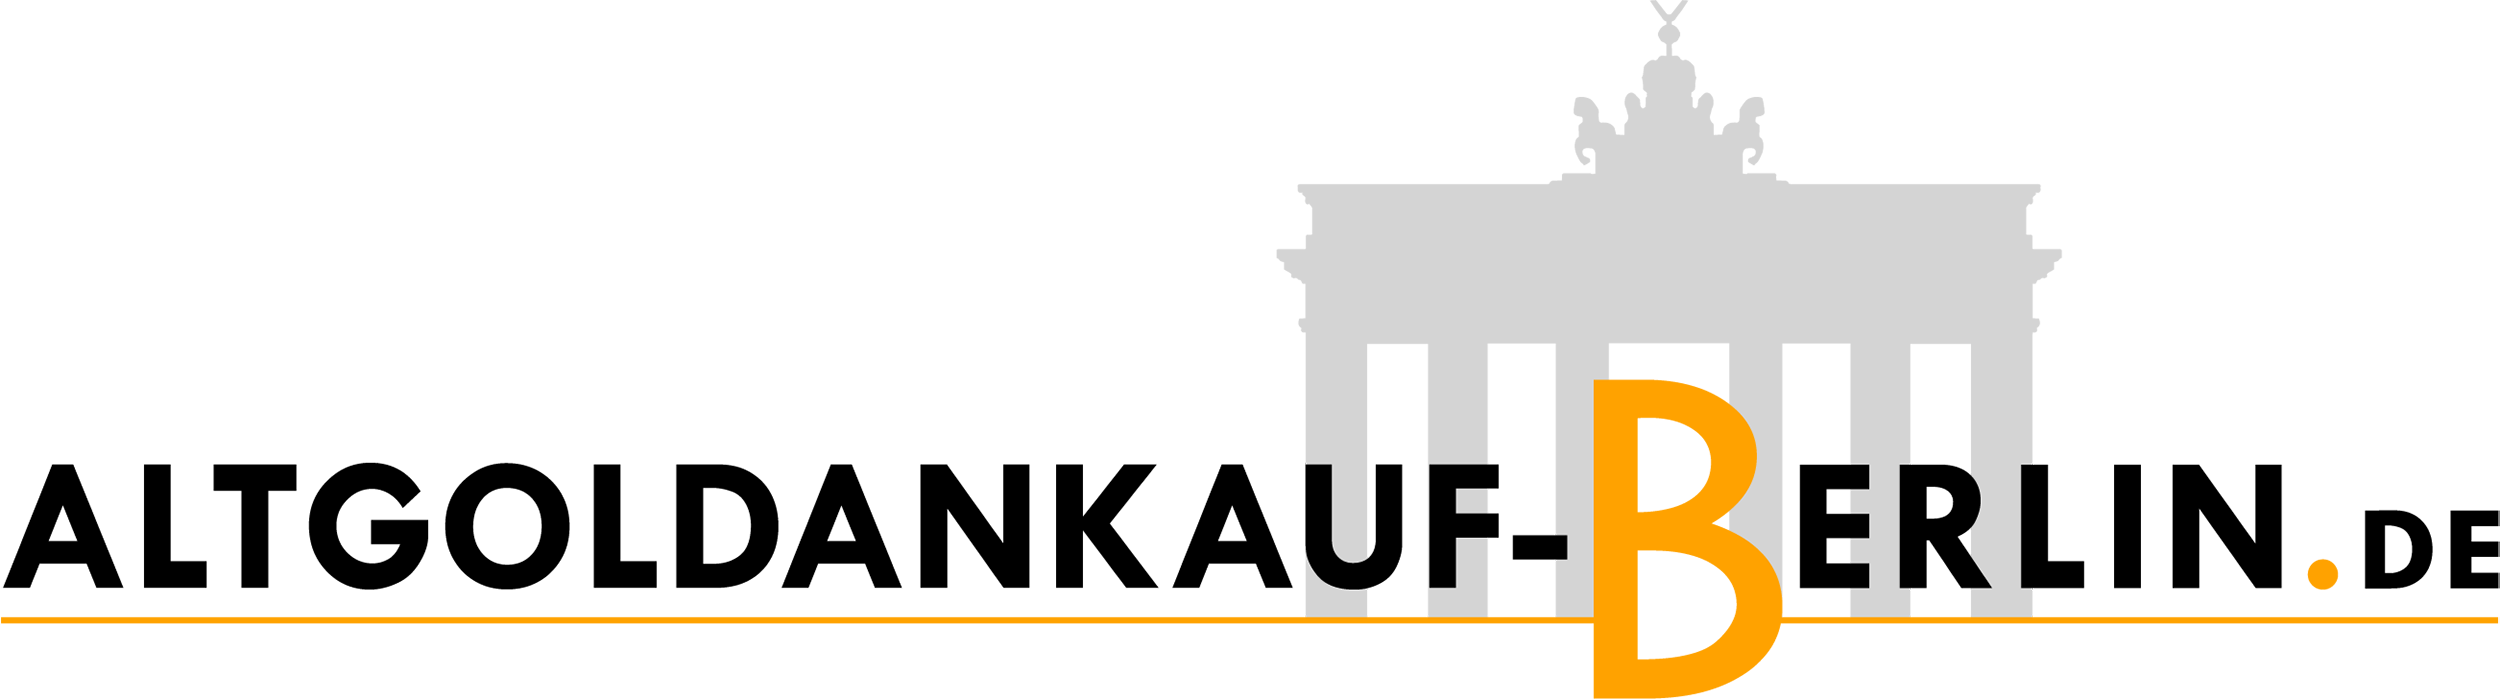 Edelmetallankauf Logo